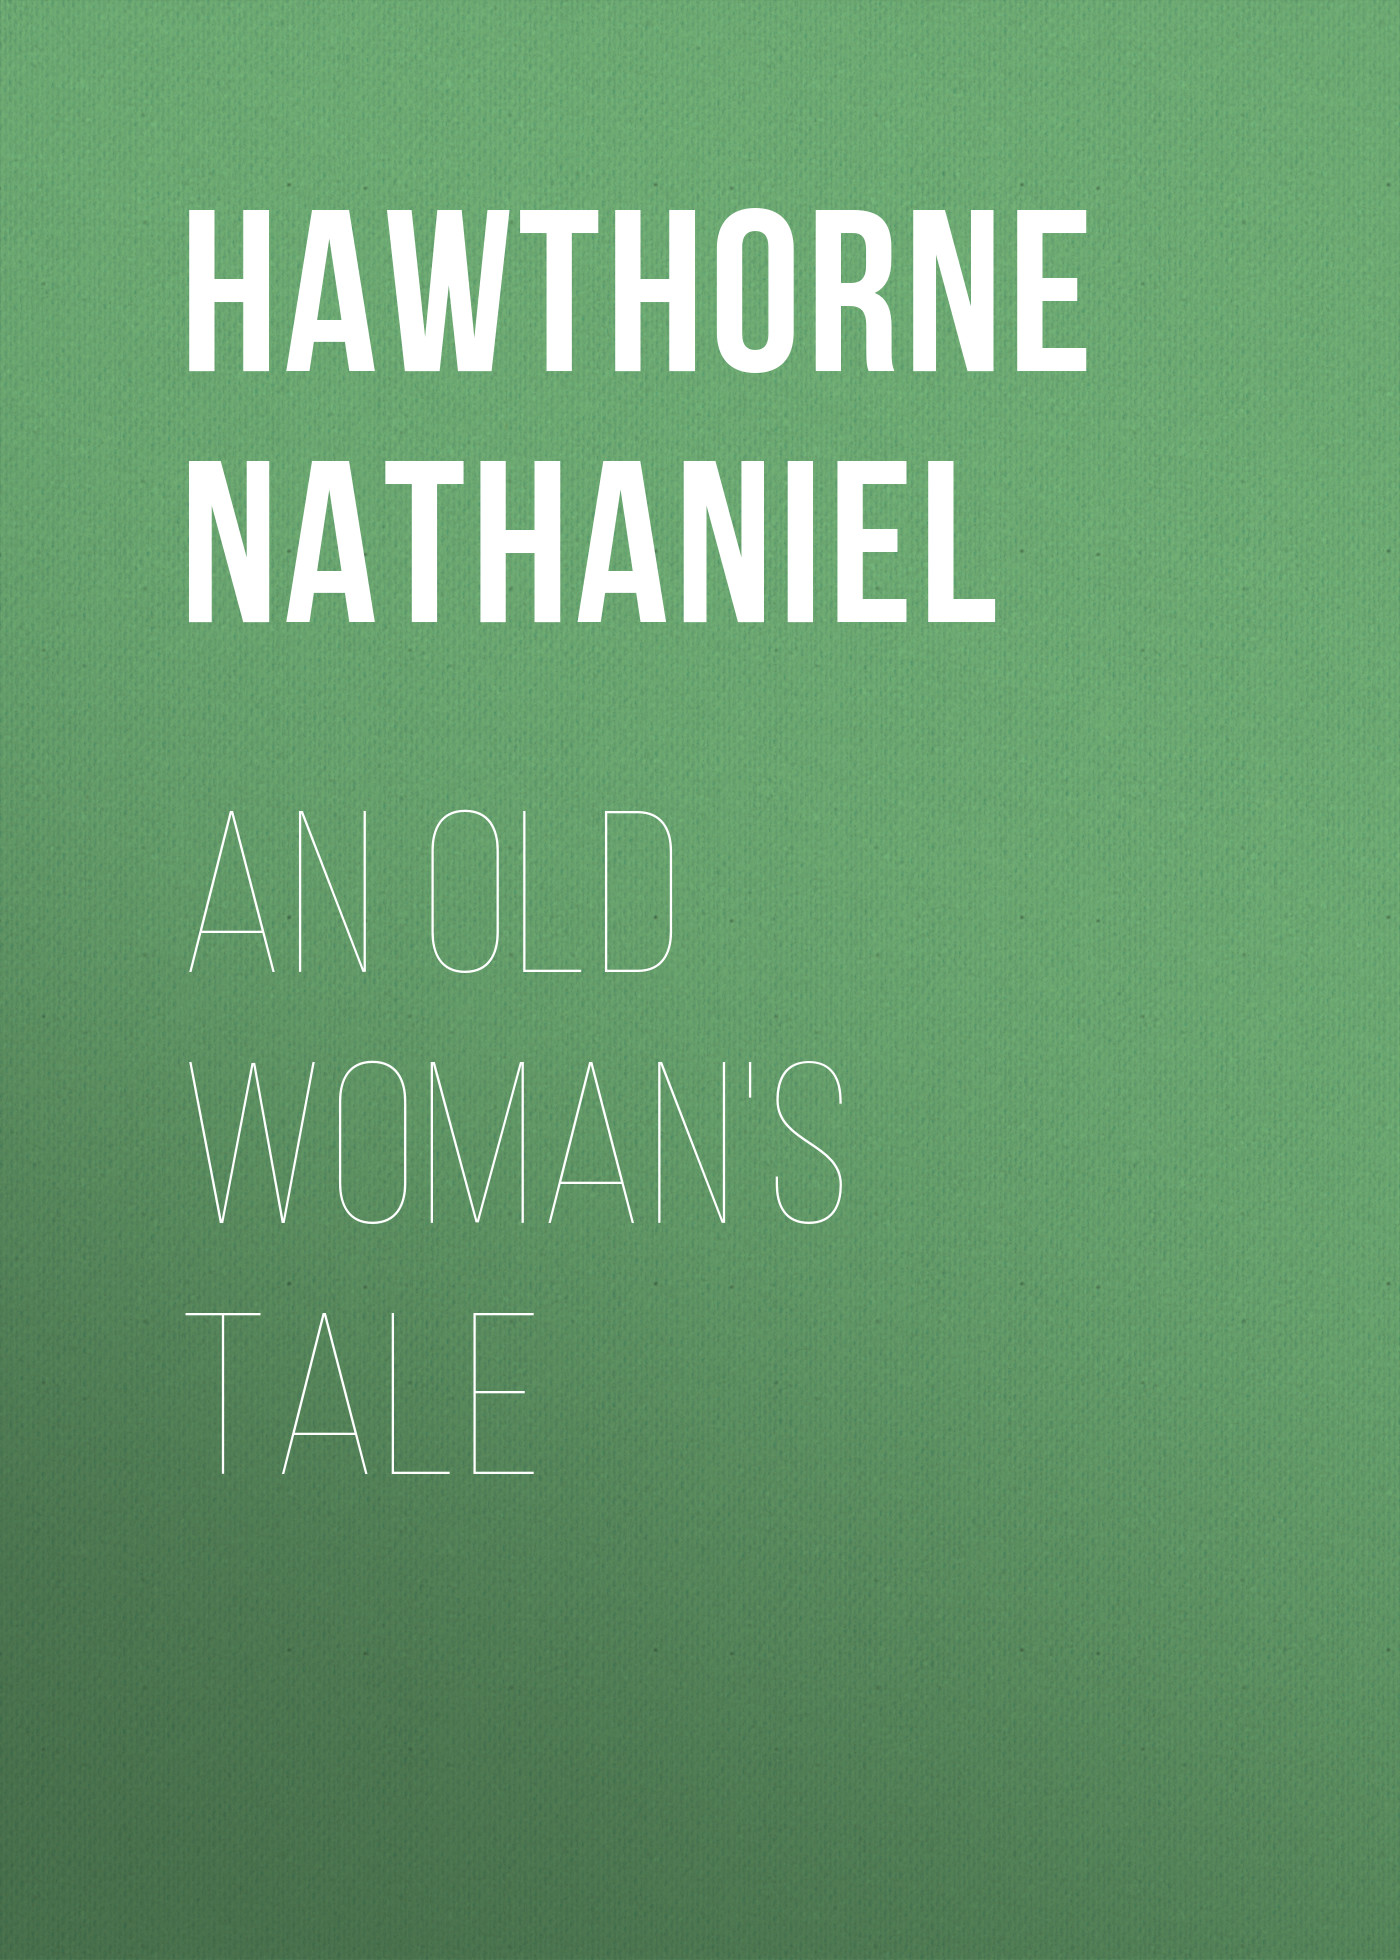 Книга An Old Woman's Tale из серии , созданная Nathaniel Hawthorne, может относится к жанру Литература 19 века, Зарубежная старинная литература, Зарубежная классика. Стоимость электронной книги An Old Woman's Tale с идентификатором 25560900 составляет 0 руб.